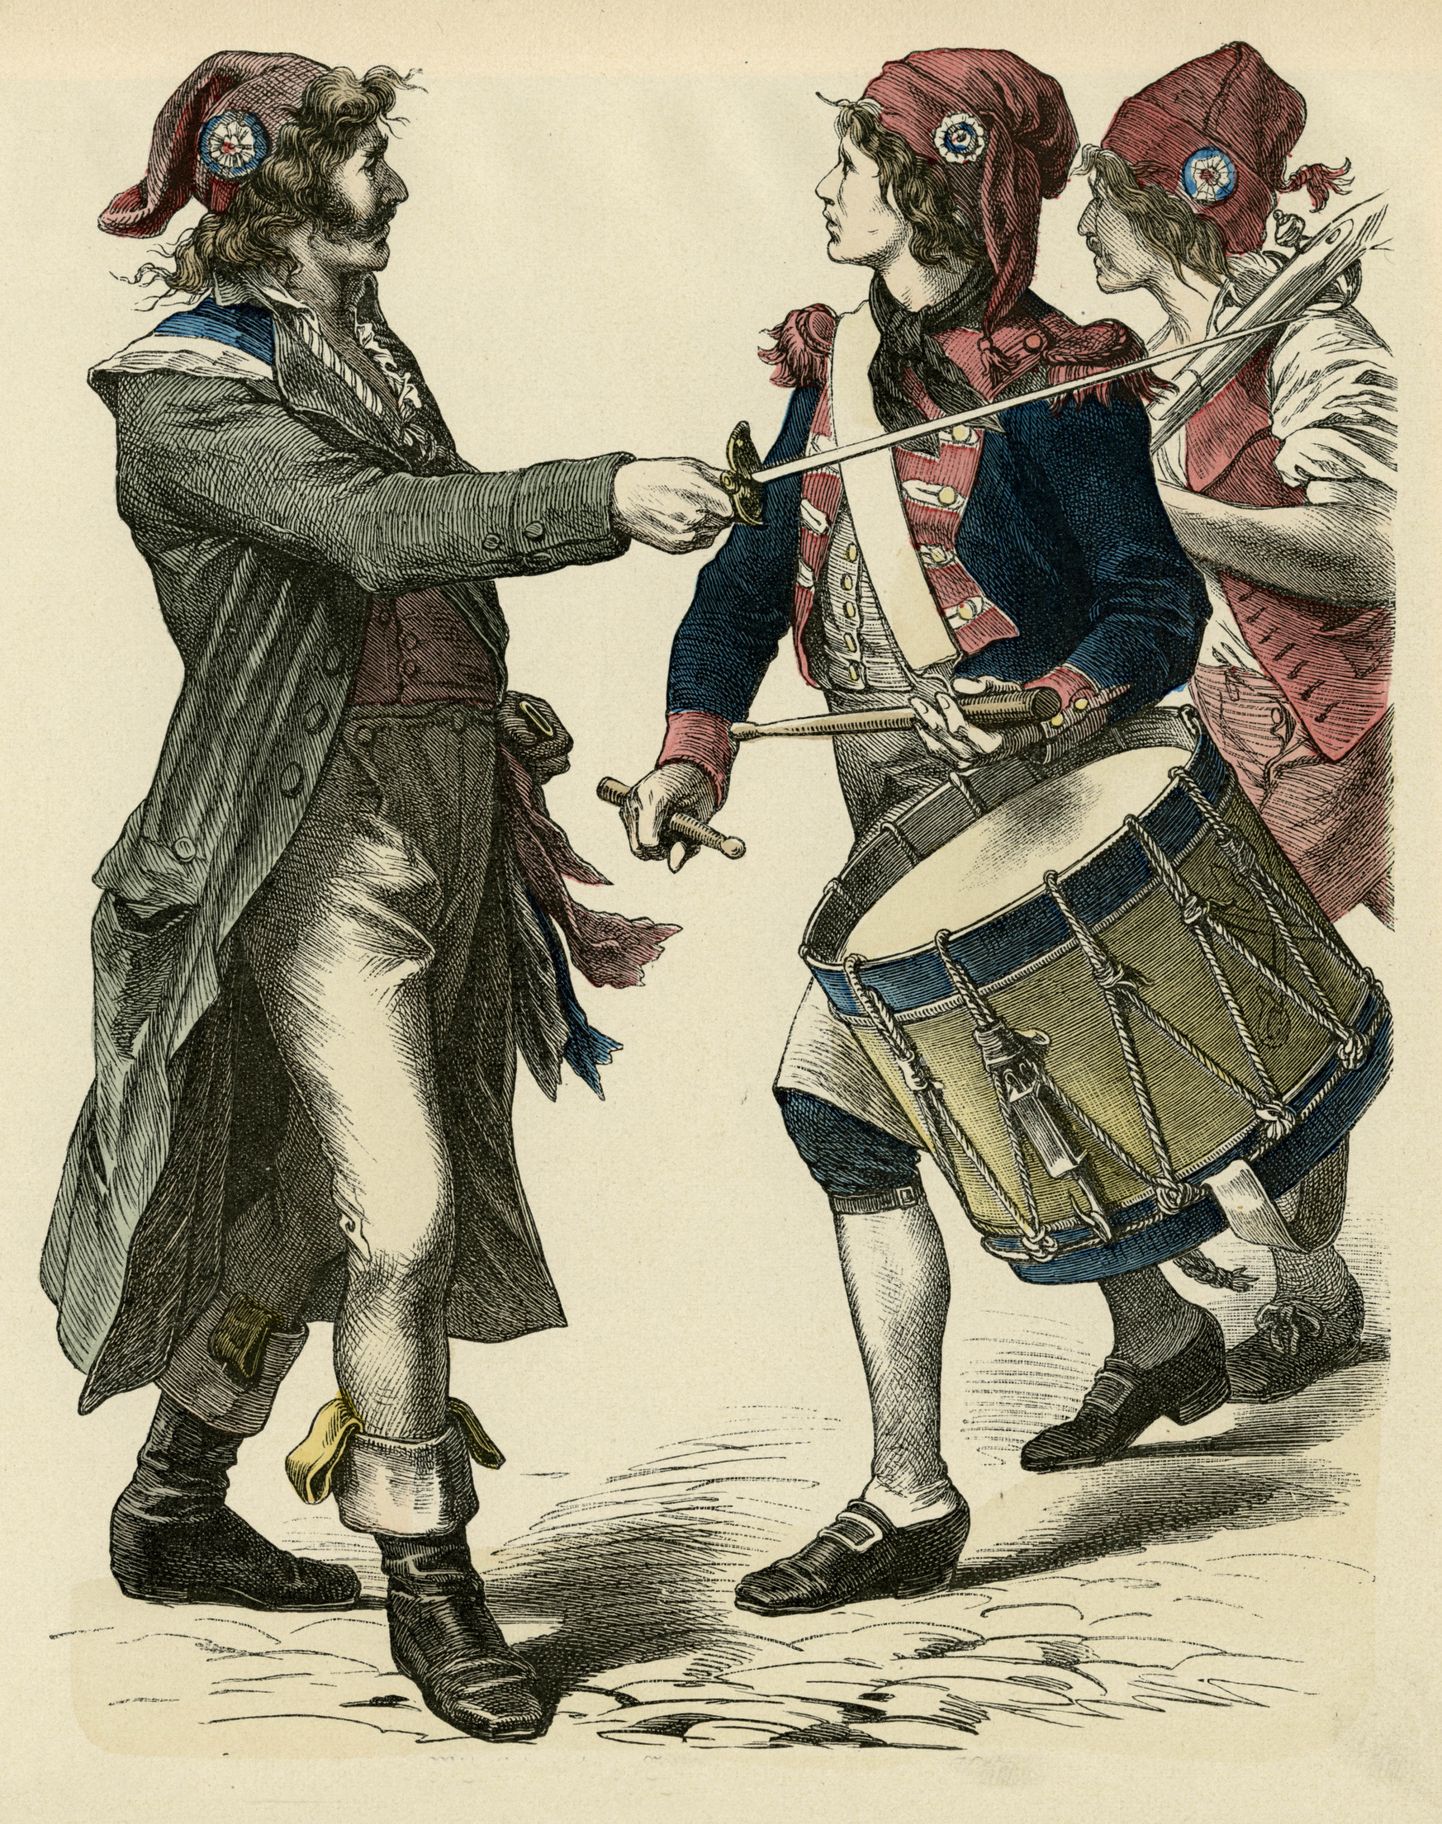 Prantsuse revolutsionäärid tüüpilises rõivastuses: pantaloonid ja sans-coulettes. Aastad 1793 - 1794